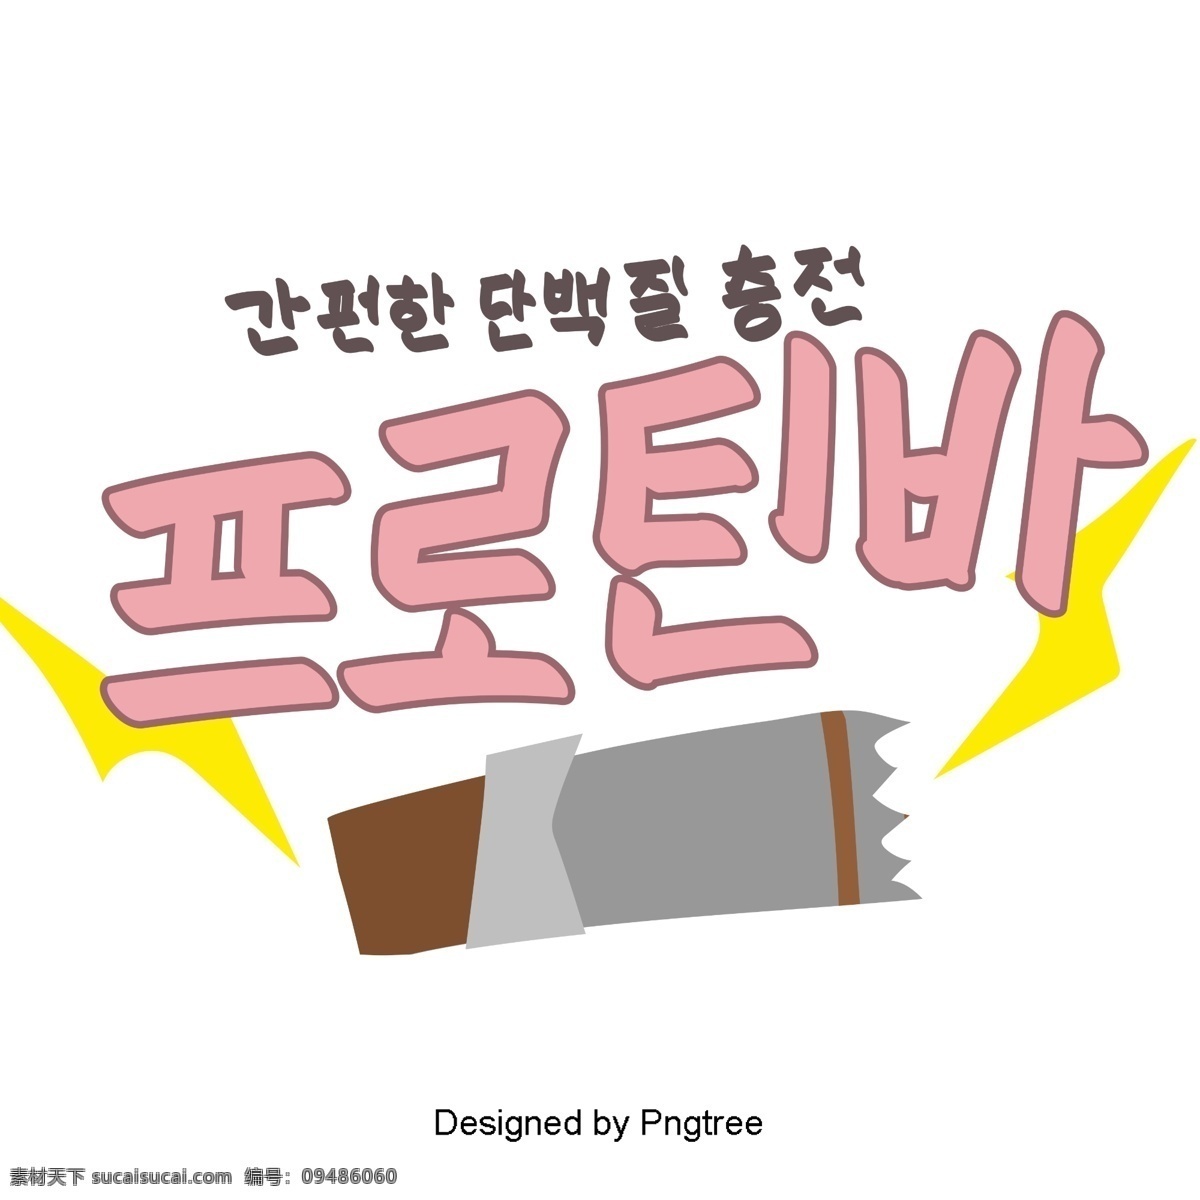 韩国 食品 锡 巧克力 元素 手 一个 可爱 风格 手写 字体 餐饮 韩文 字形 移动支付方式 动画片 闪电